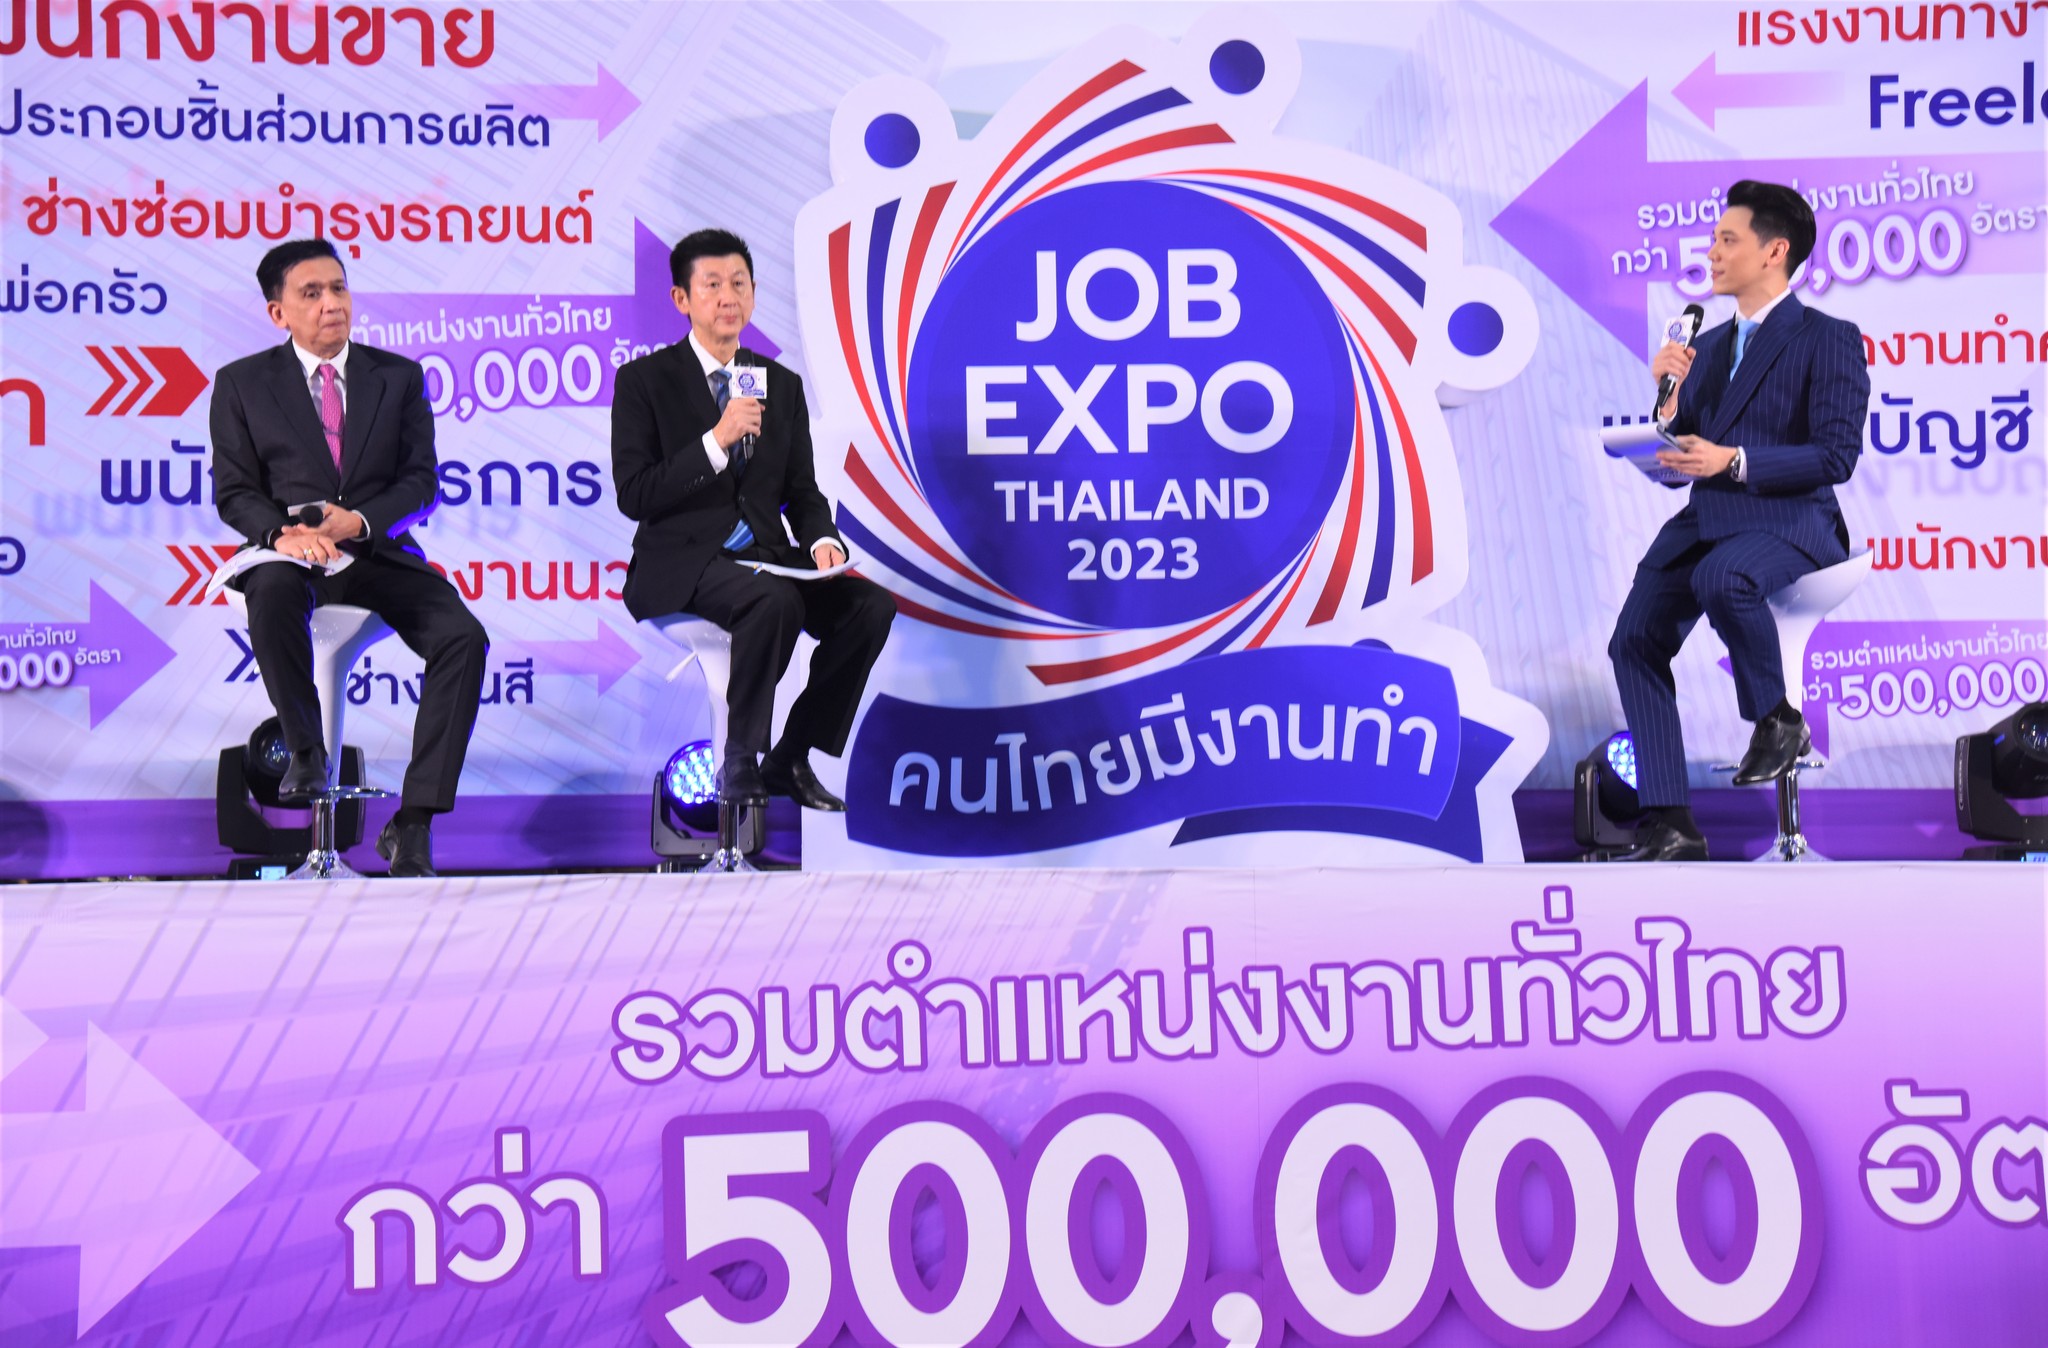 กระทรวงแรงงาน ชวนผู้สูงอายุ กลุ่มเปราะบาง ร่วมงานมหกรรมจัดหางาน JOB EXPO THAILAND 2023